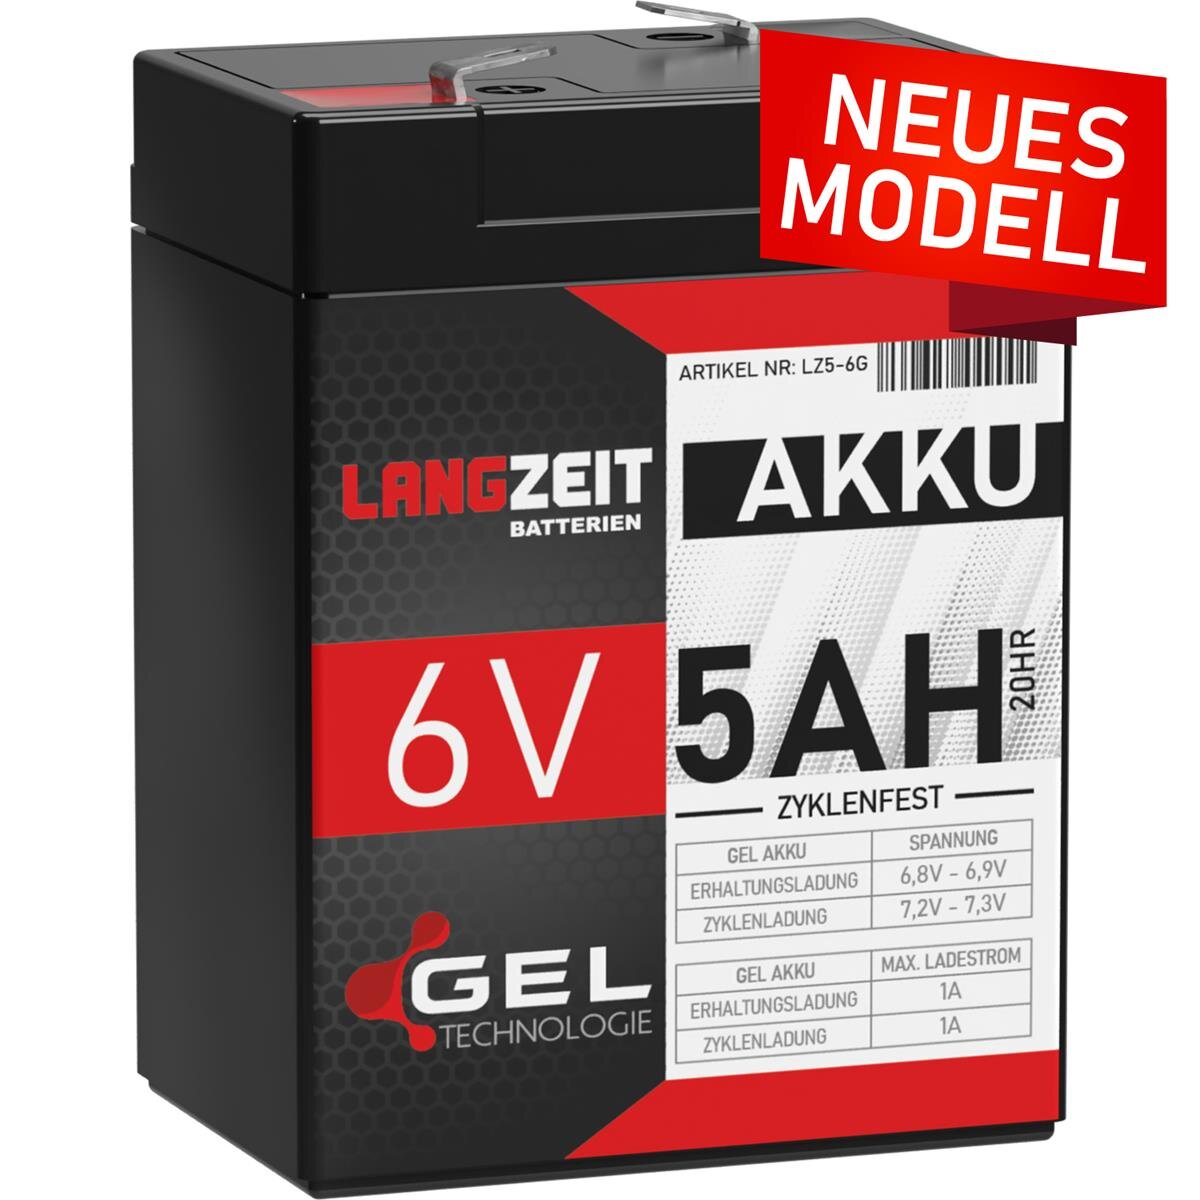 https://www.winnerbatterien.de/media/image/product/5713/lg/langzeit-gel-akku-5ah-6v.jpg